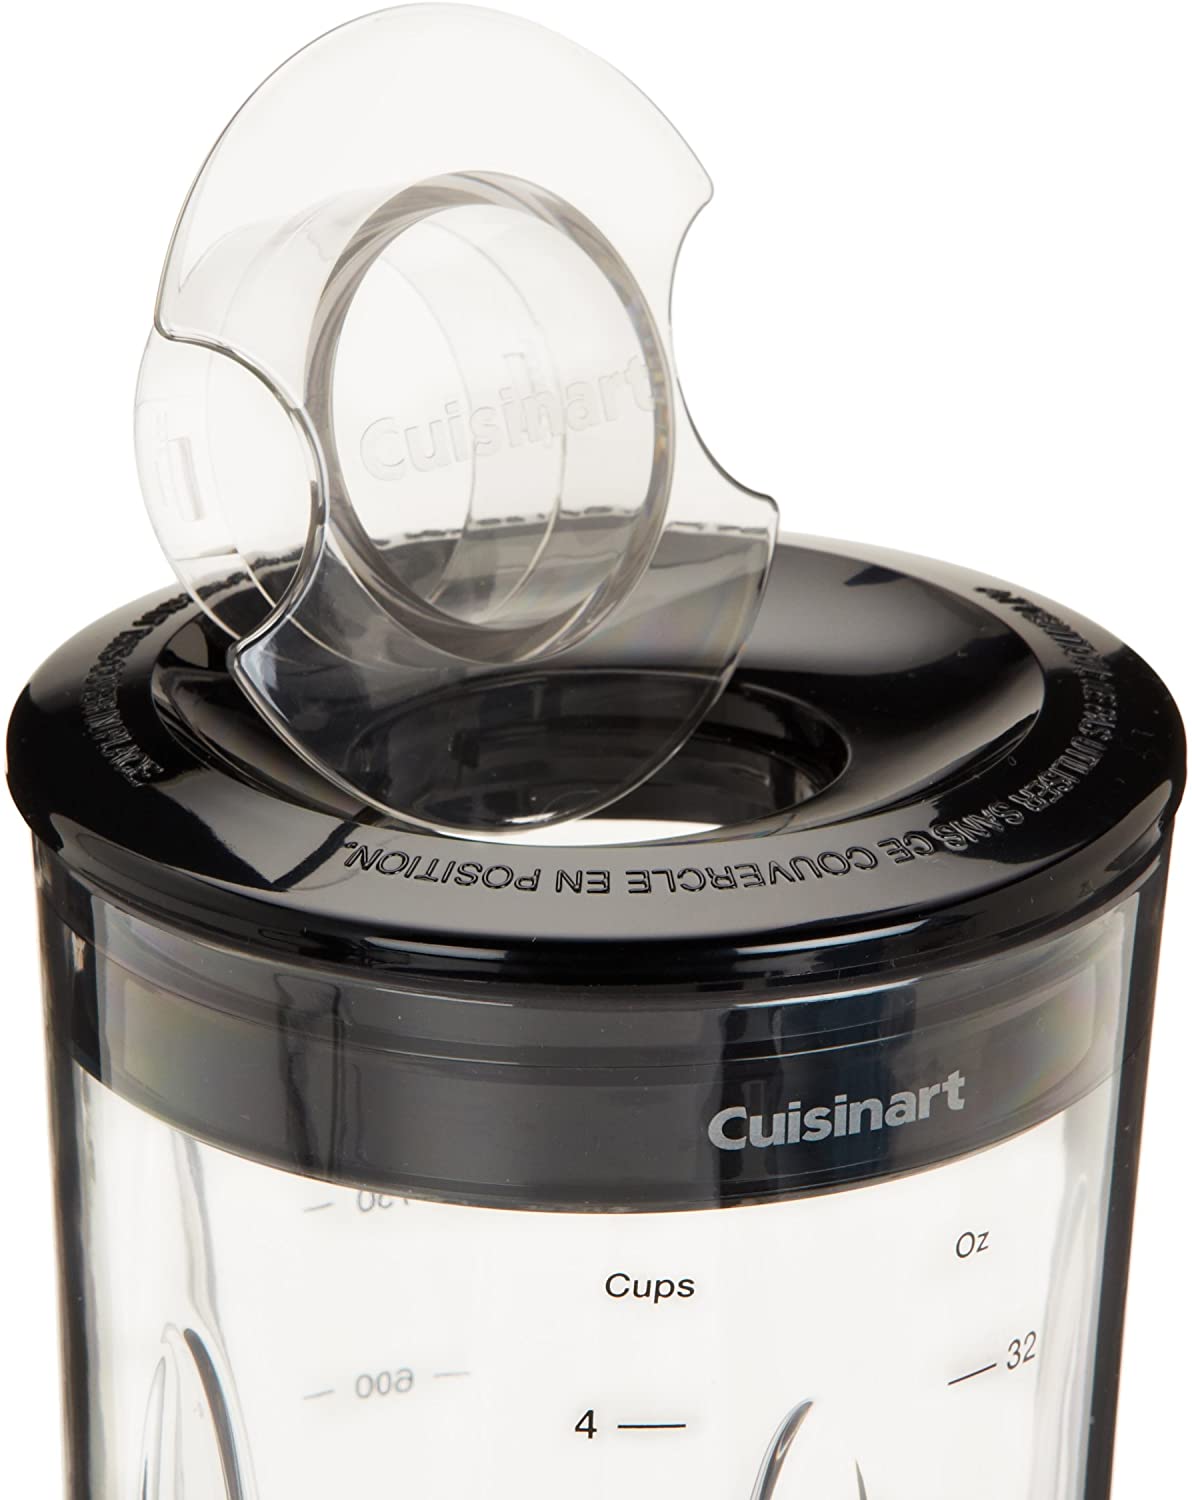 Cuisinart Compact Blender 350Watts